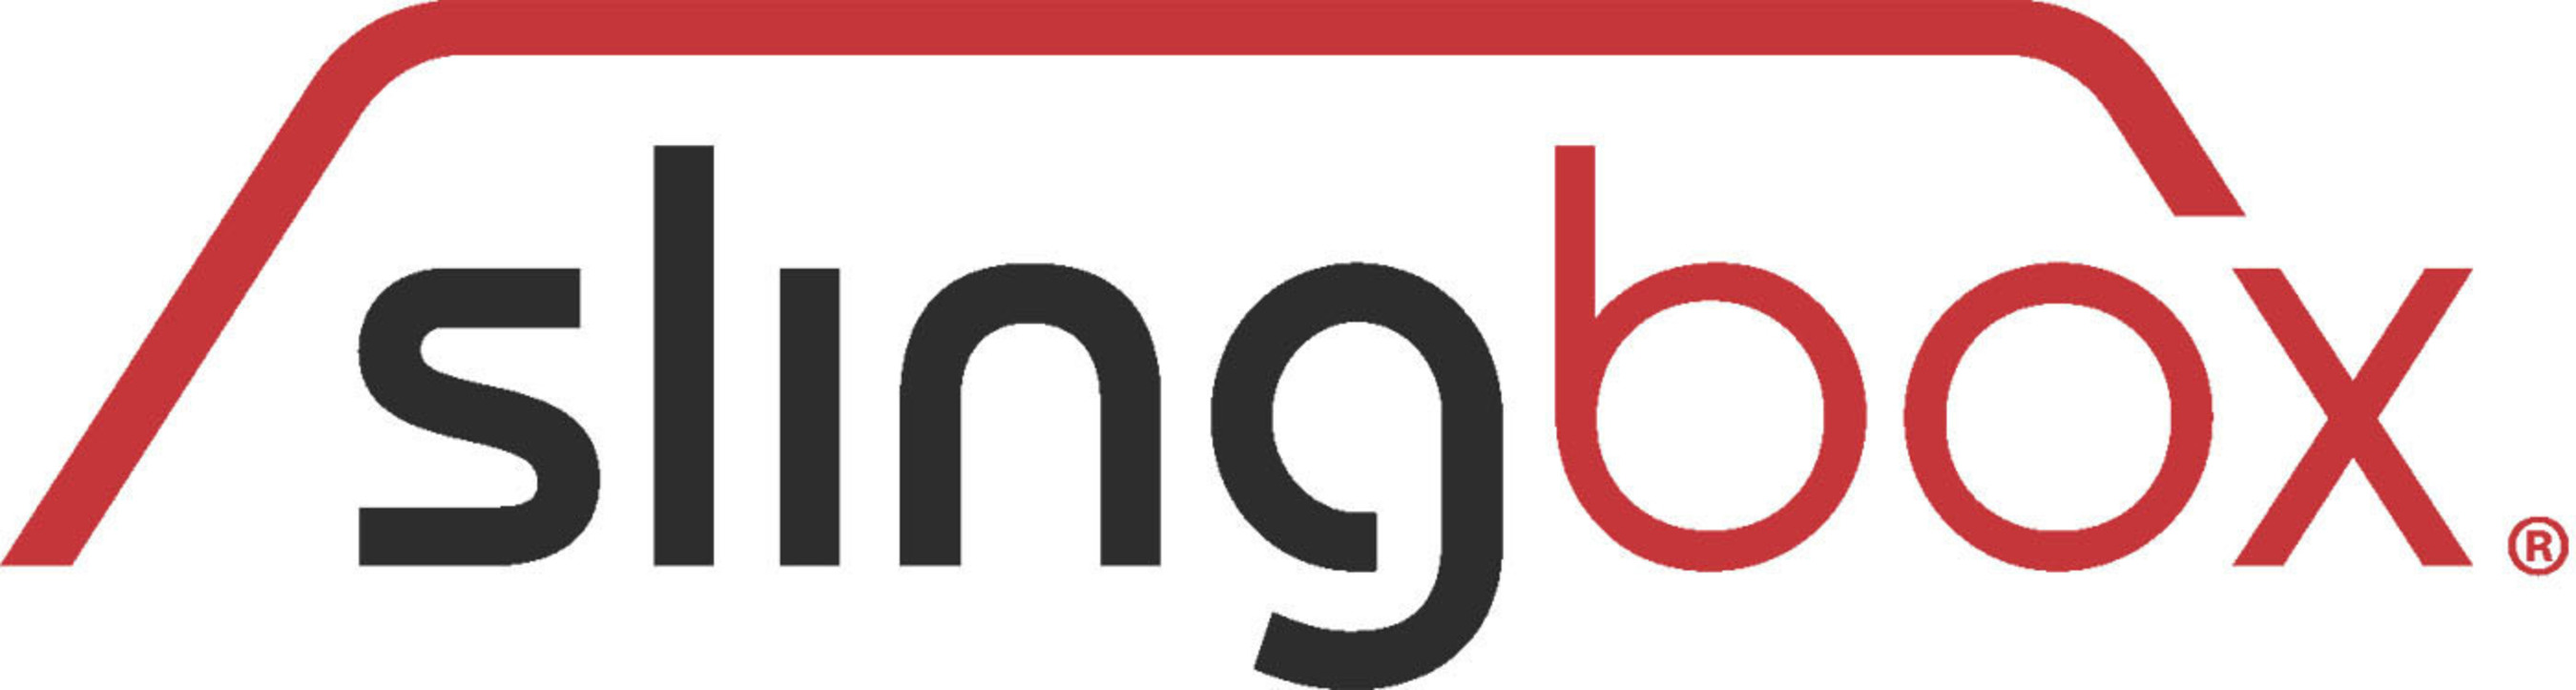 Sling Media logo. (PRNewsFoto/Sling Media Inc.) (PRNewsFoto/SLING MEDIA INC.)